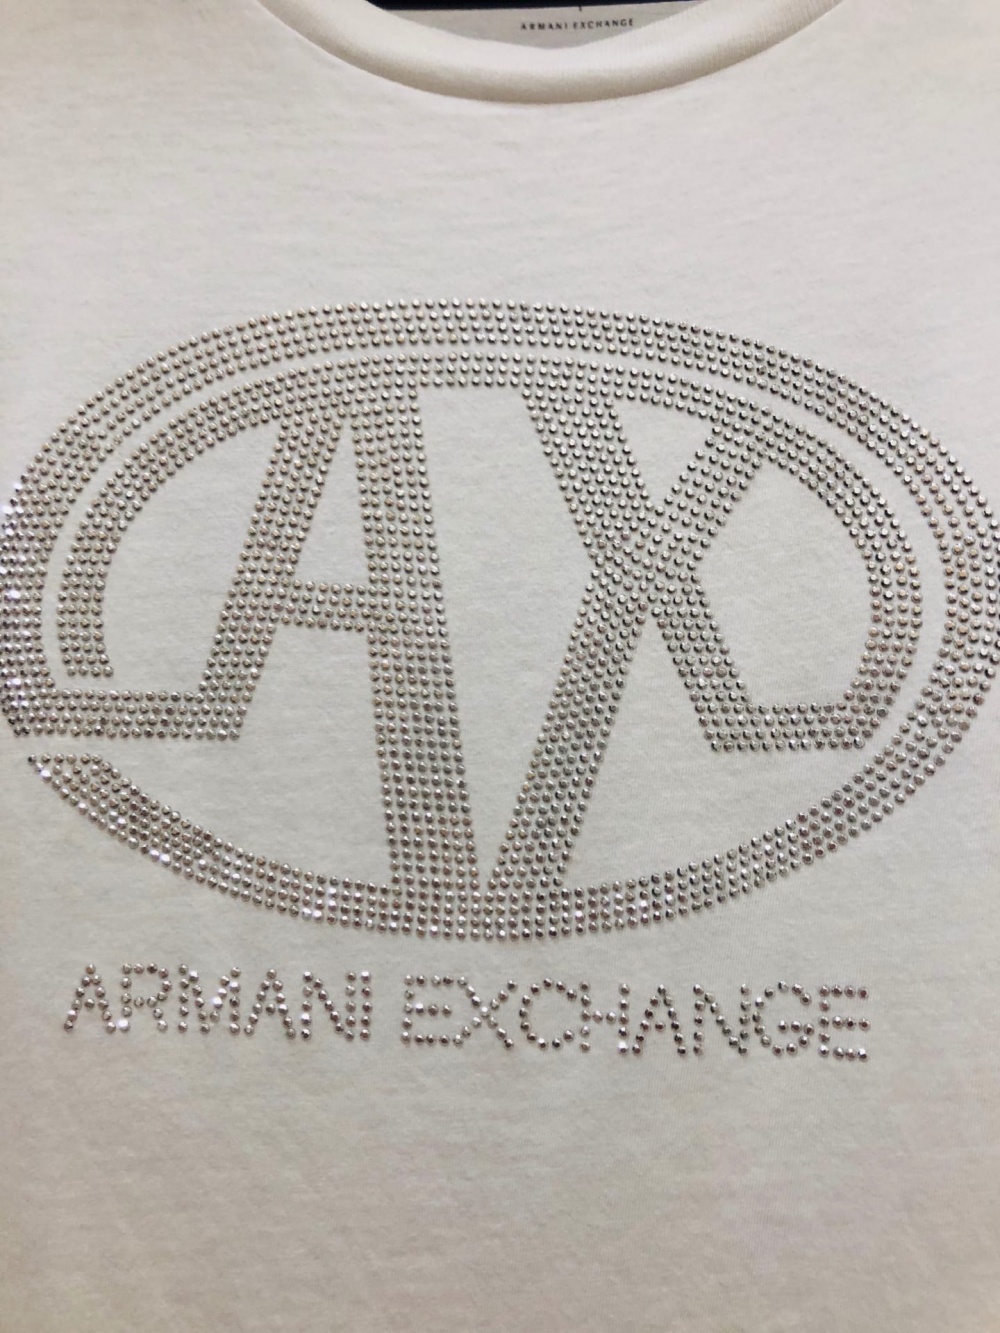 Футболка Armani Exchange. Размер S-M.